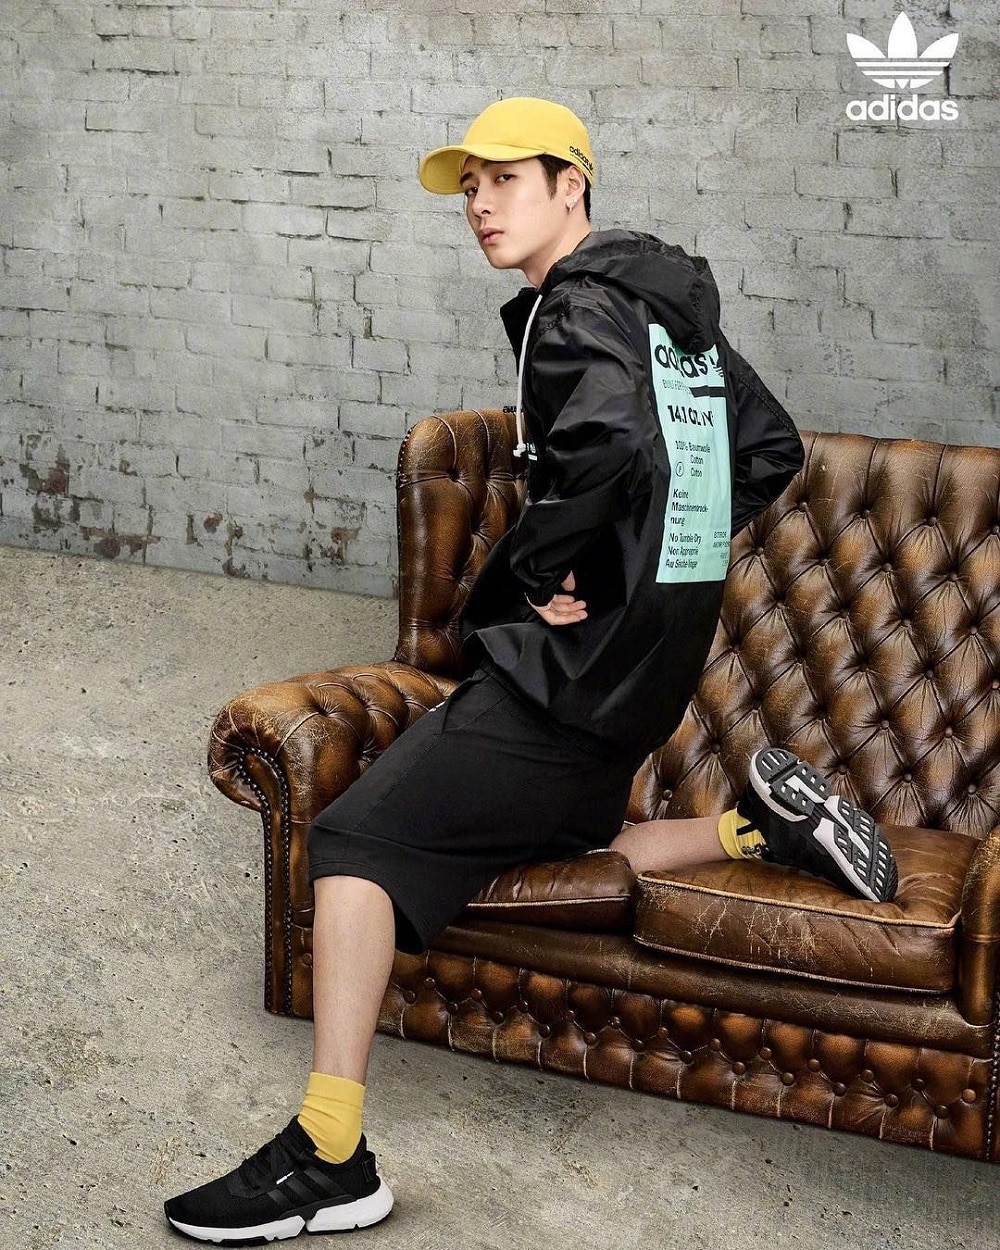 Jackson Adidas - Jackson Wang: Từ giã thể thao để theo đuổi ước mơ